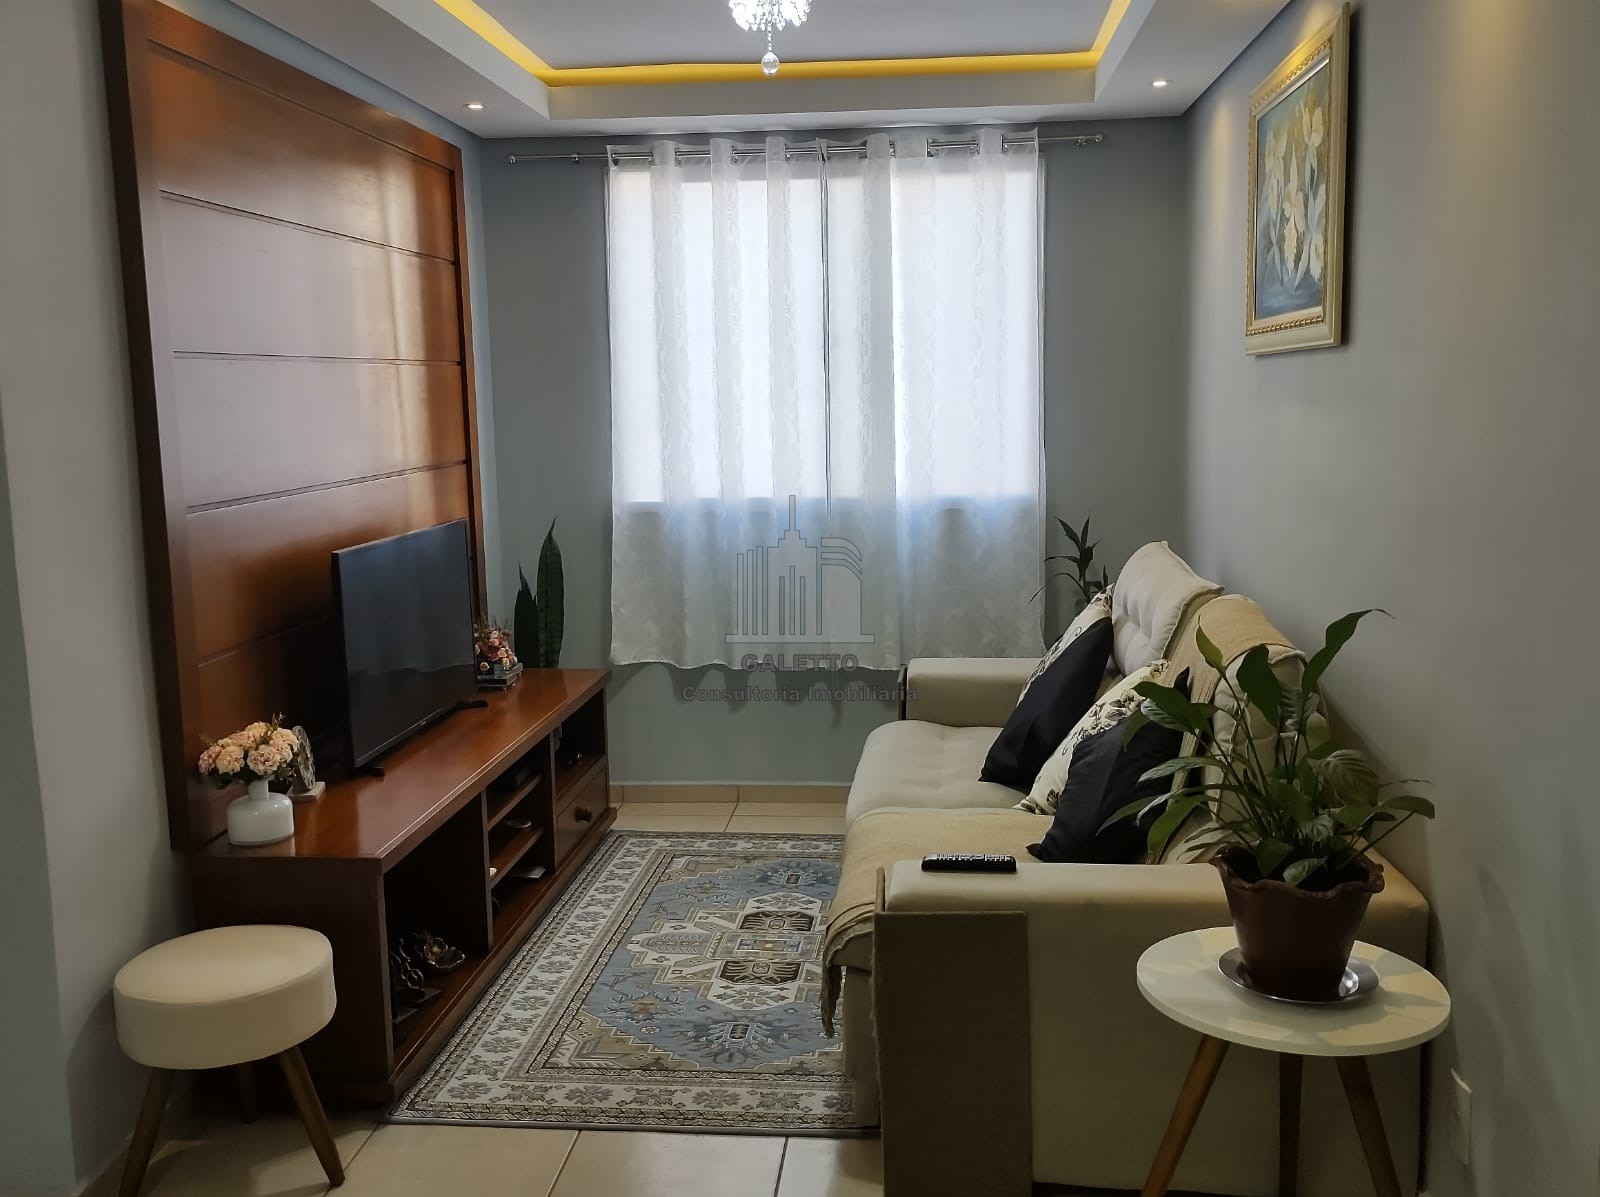 Lindo apartamento, semi-mobiliado com móveis planejados na cozinha ,  quartos e banheiro. Piso laminado e iluminação diferenciada. Campo Pequeno,  Colombo, Pr - Deck Concept Home